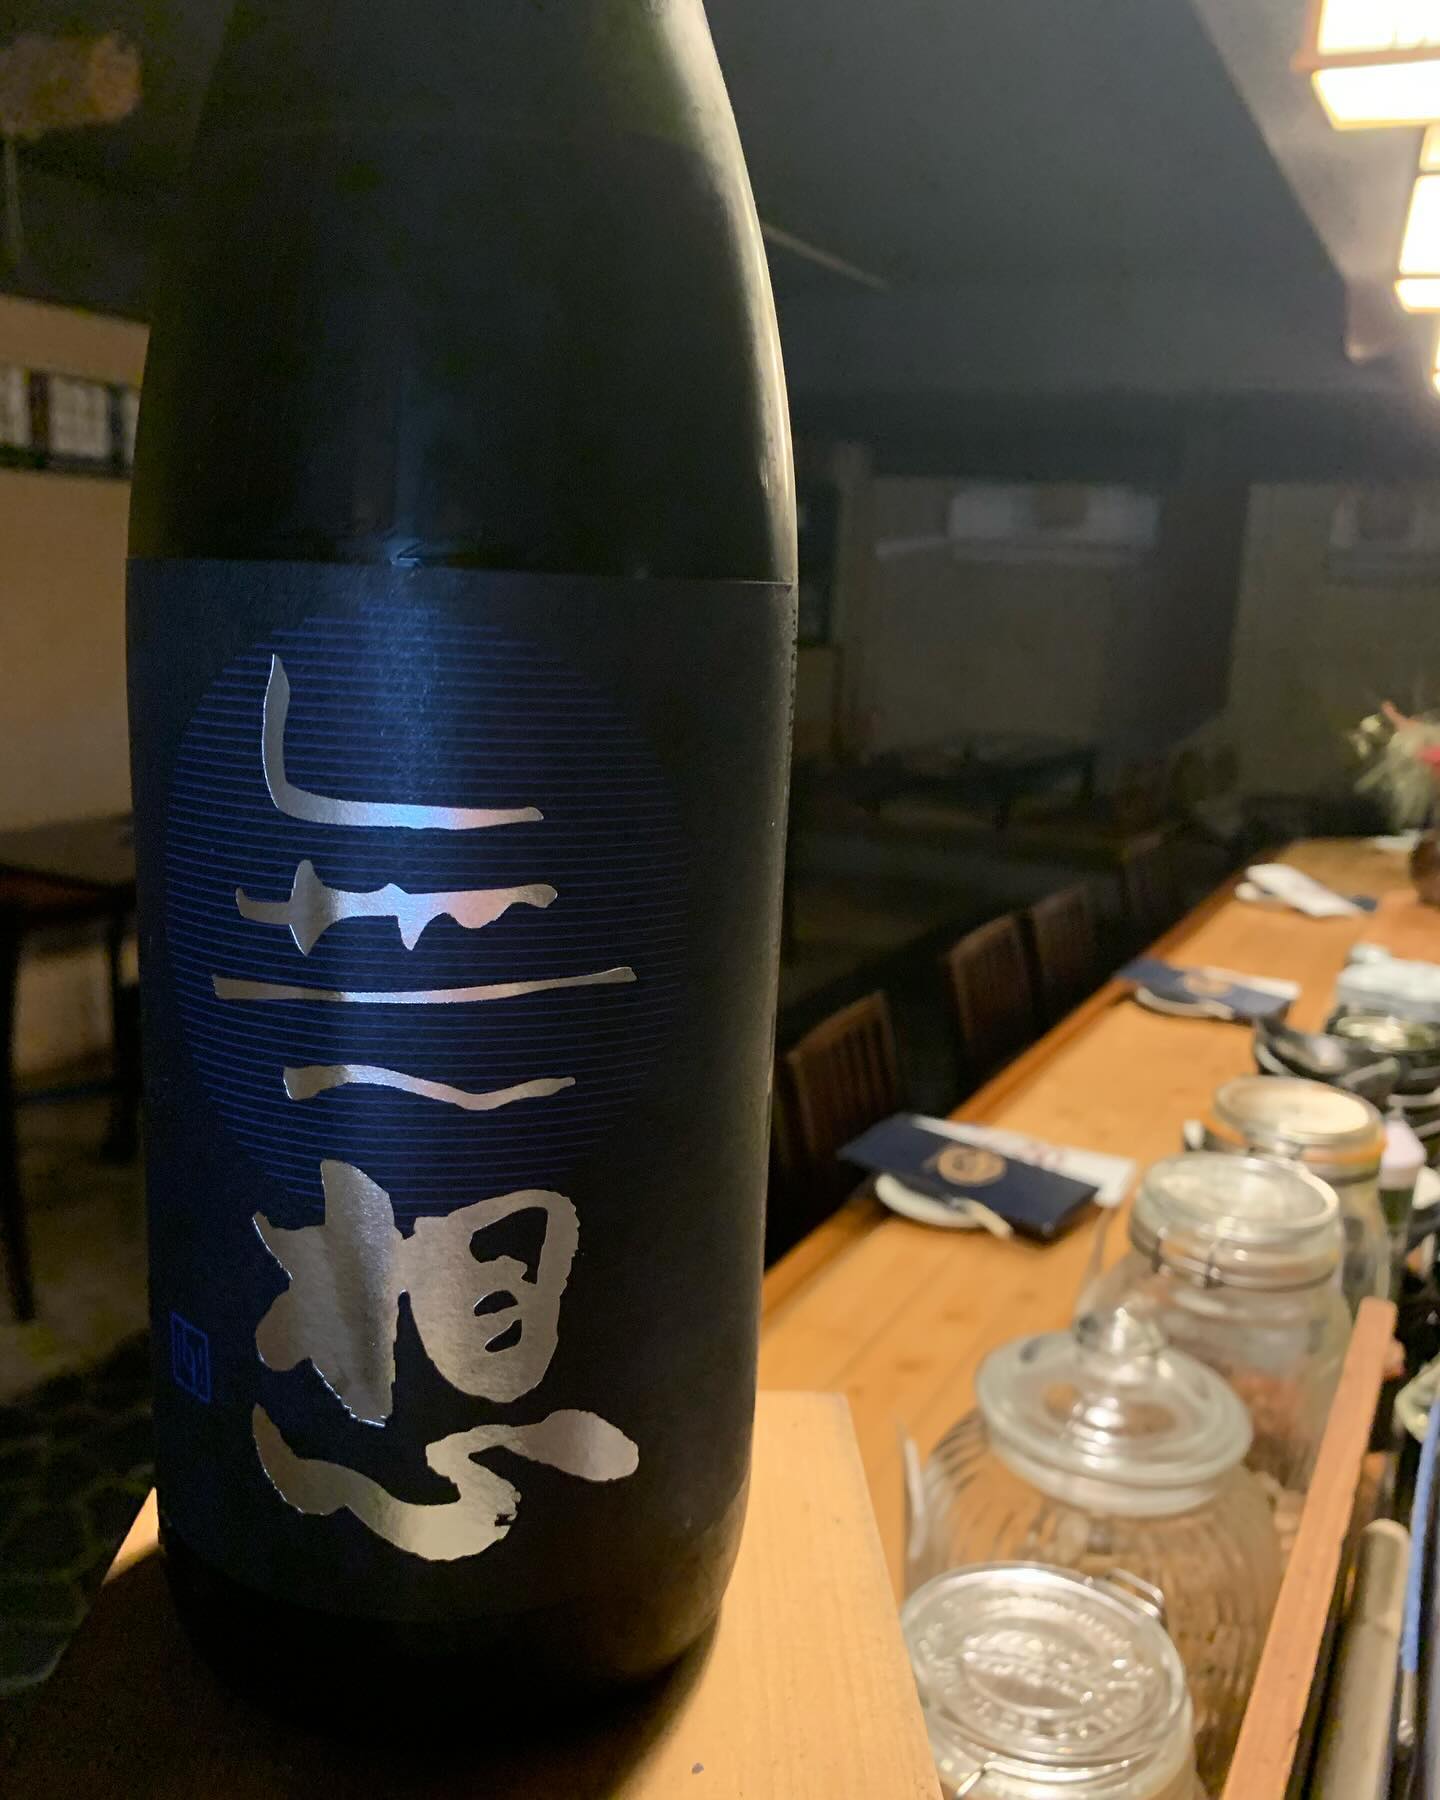 本日の日本酒紹介「無想」
日本酒ビギナーはもとより玄人まで唸らせる
今までにない淡麗な飲み口、新しい辛口
ガス感の強い開けたてから
抜けていくまでのさまも
お楽しみください。
 #